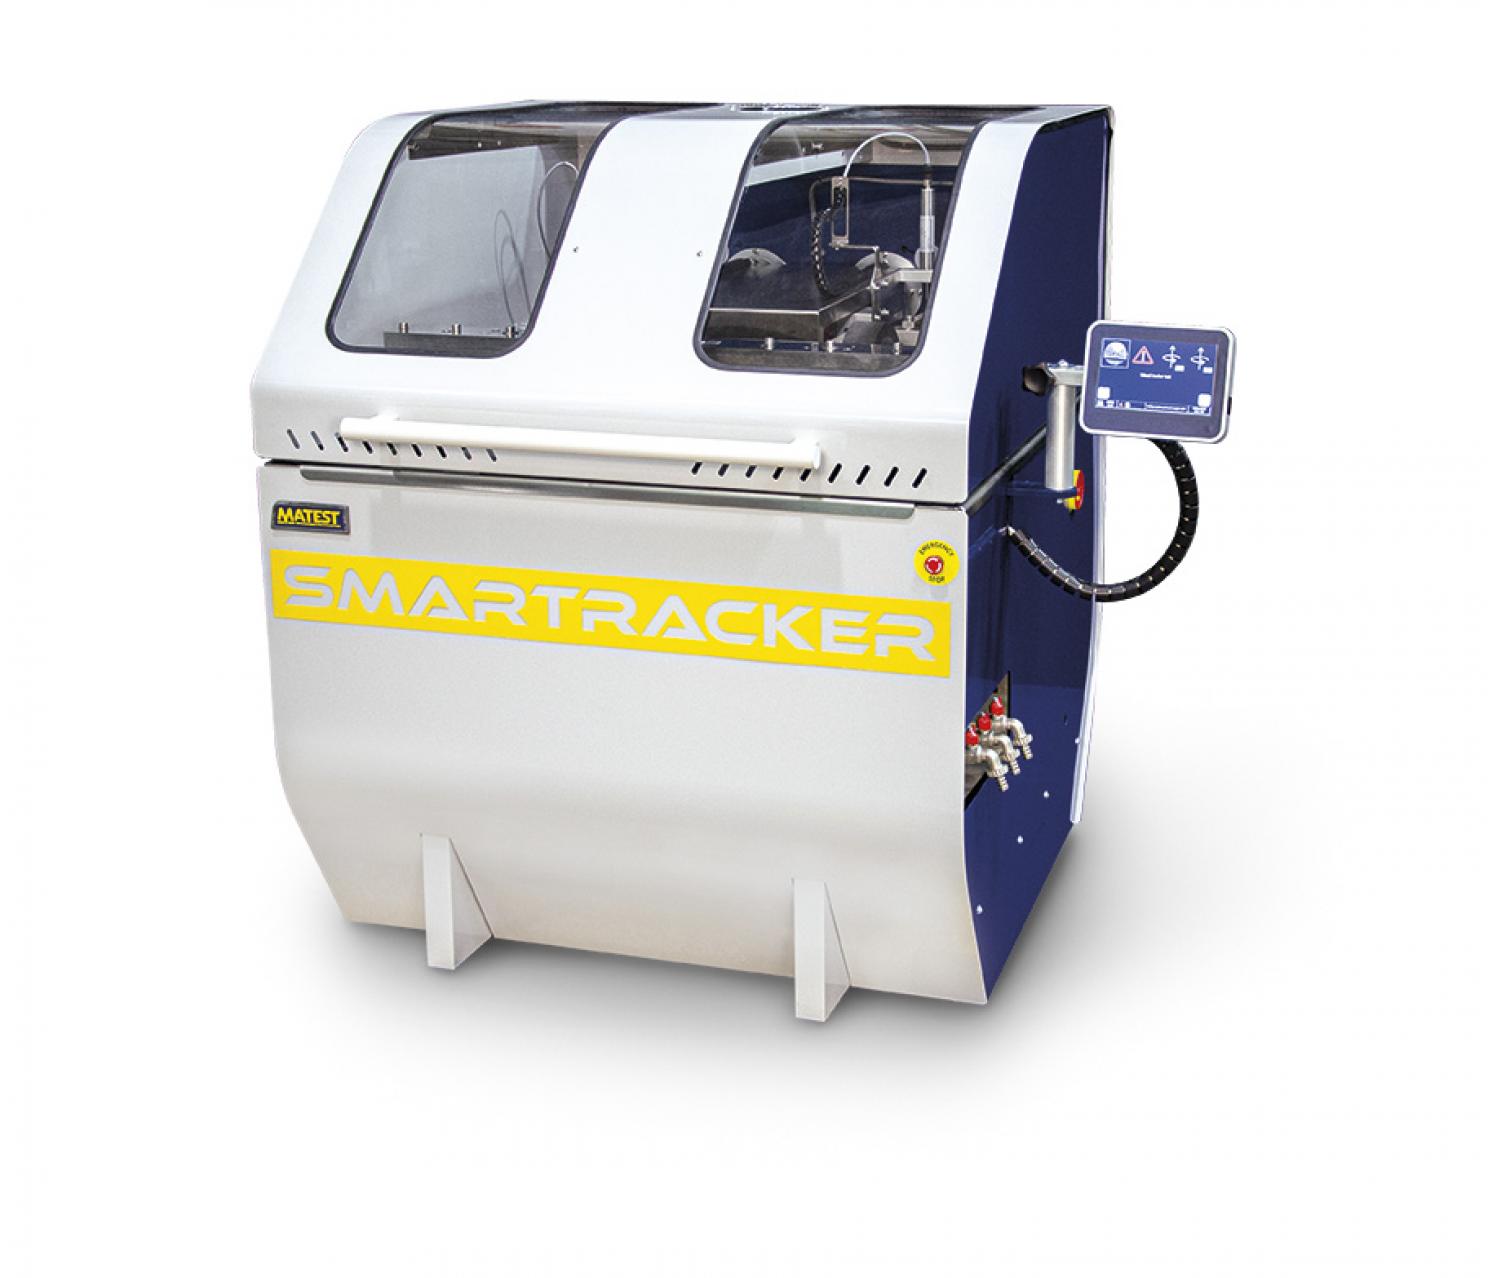 SMARTRACKER™ - Multi wheels hamburg wheel tracker